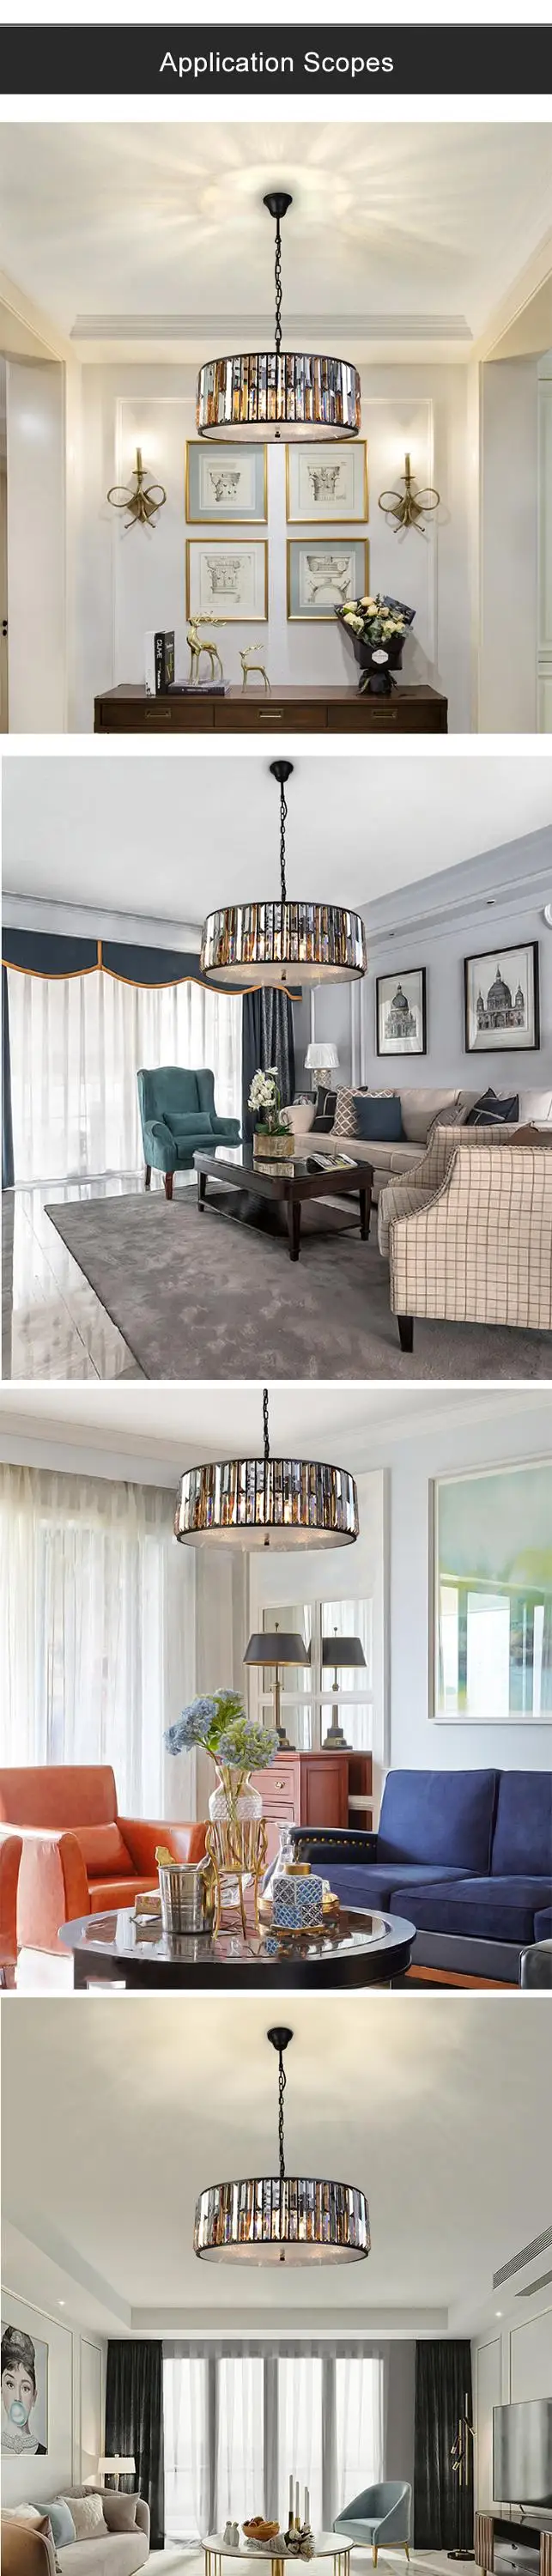 European luxury atmosphere amber crystal chandelier black retro circular living room dining room chandelier